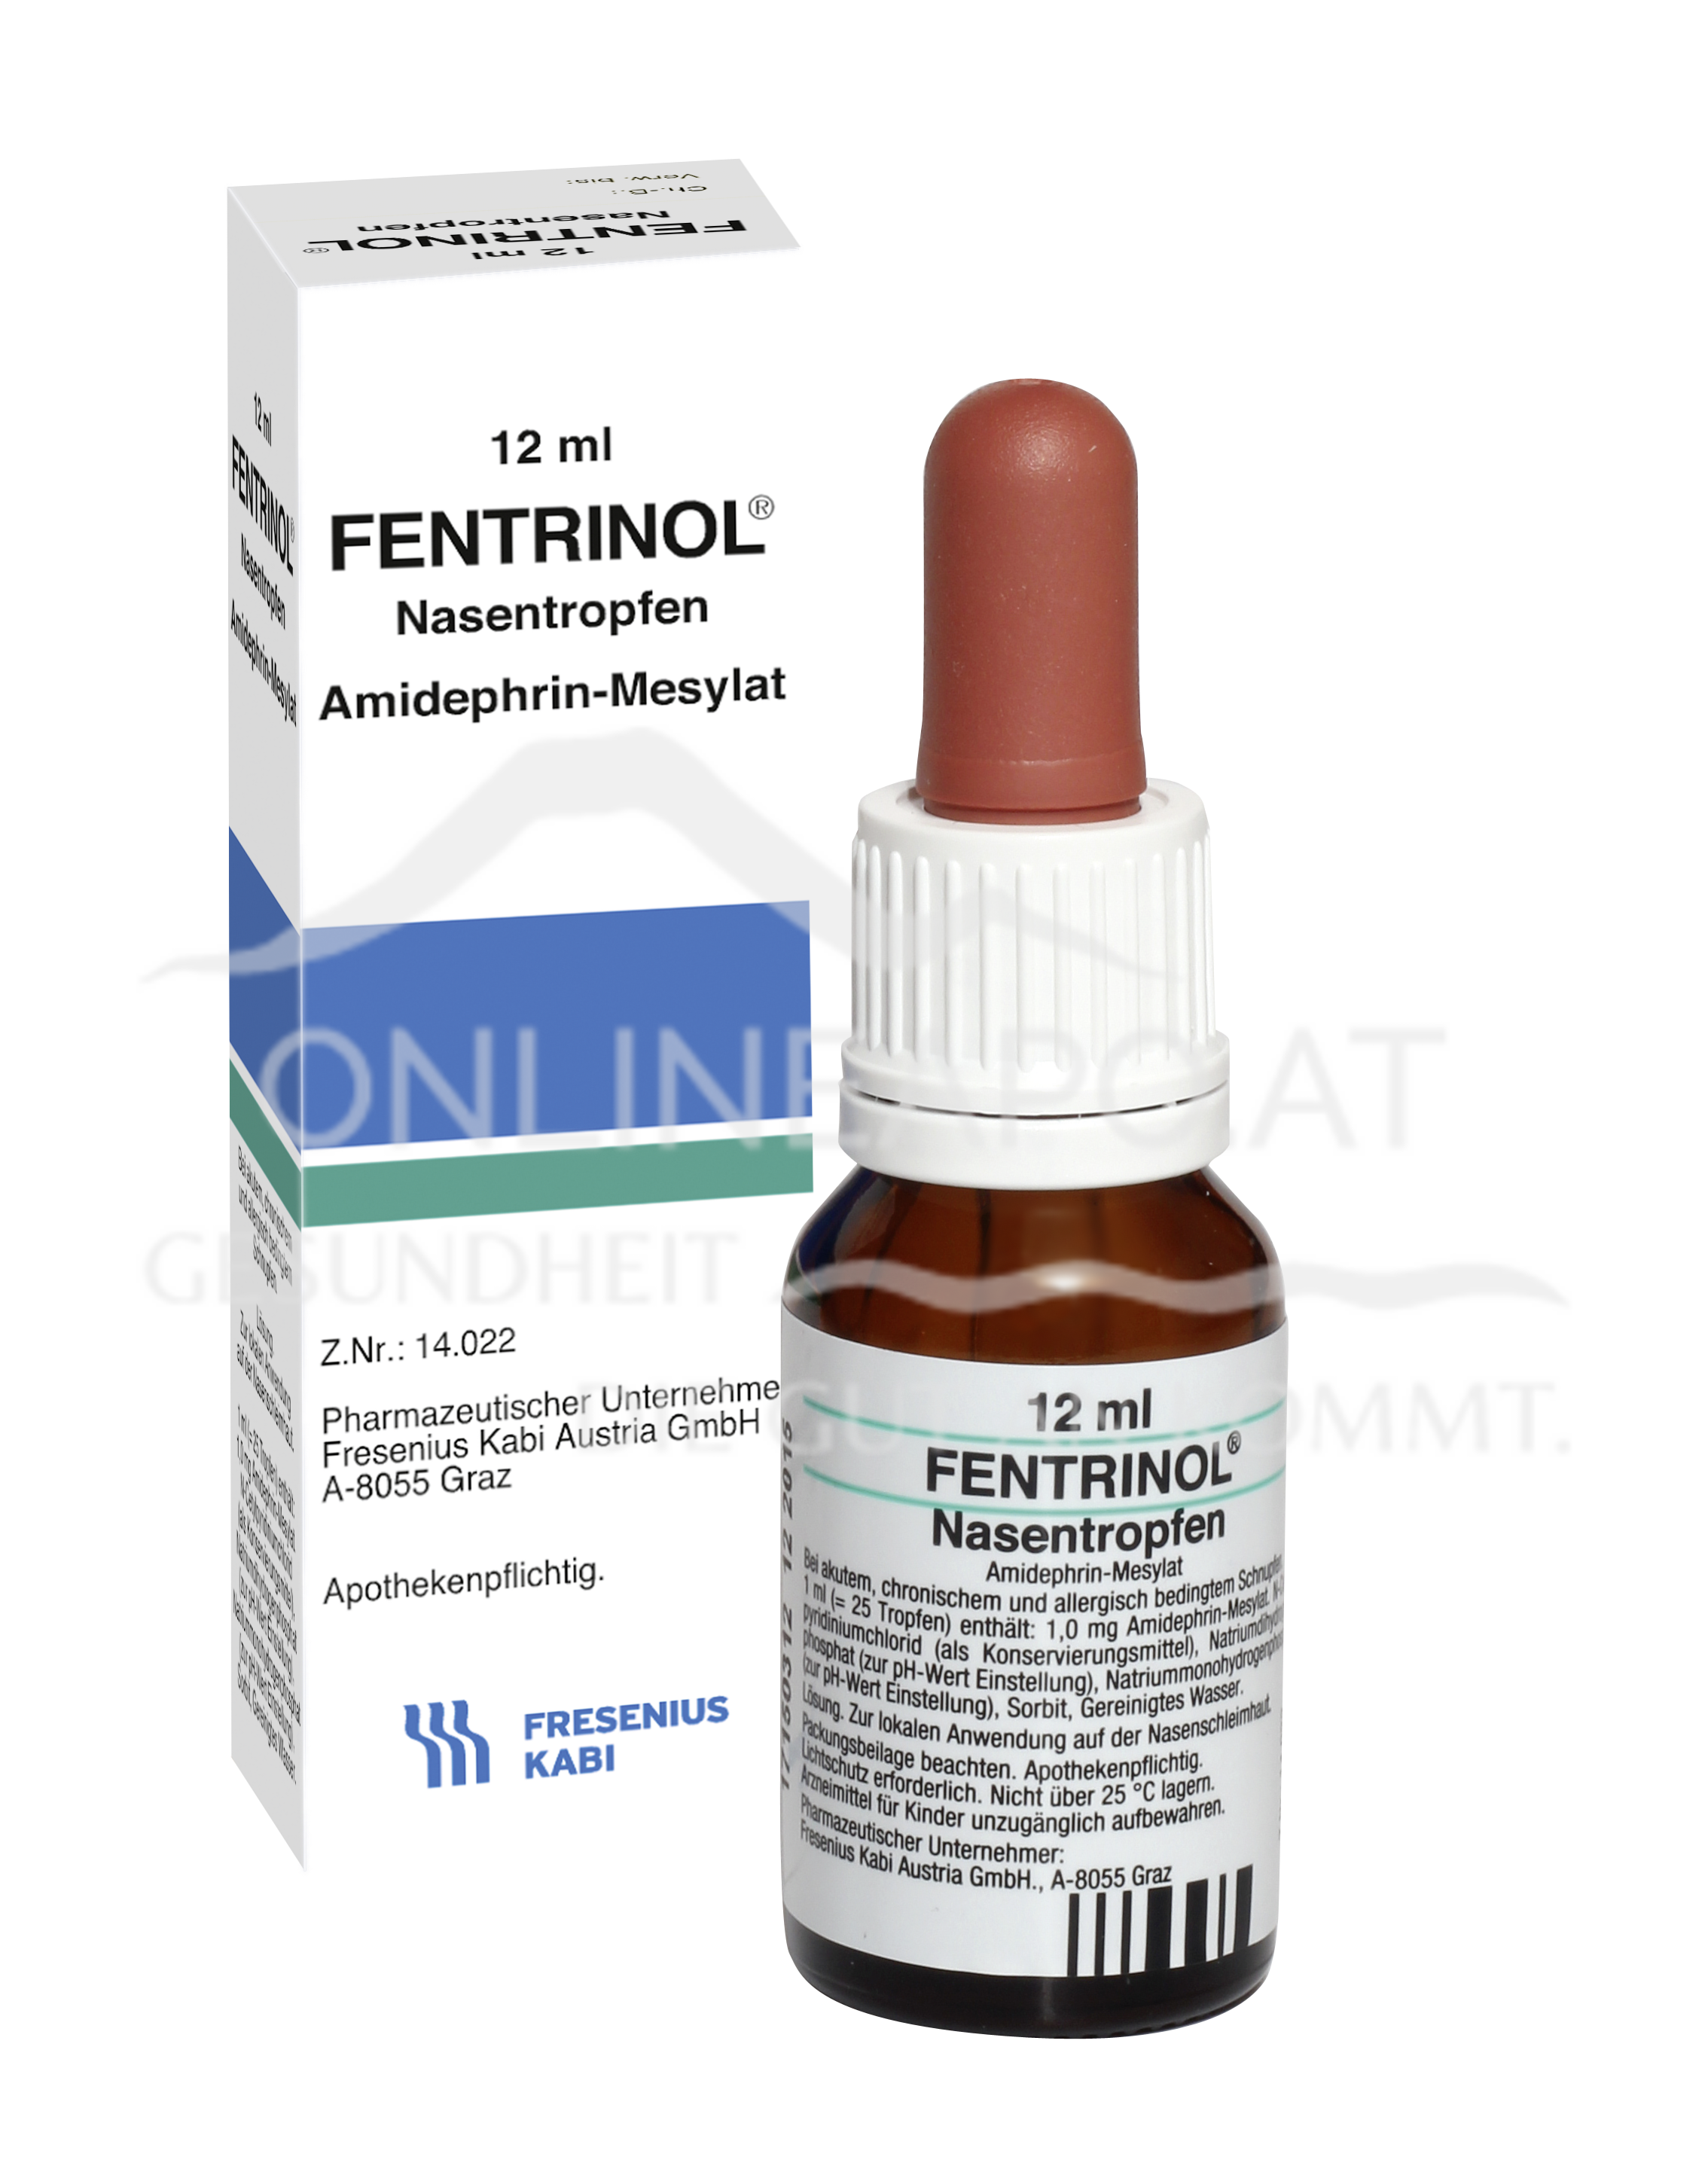 Fentrinol® Nasentropfen